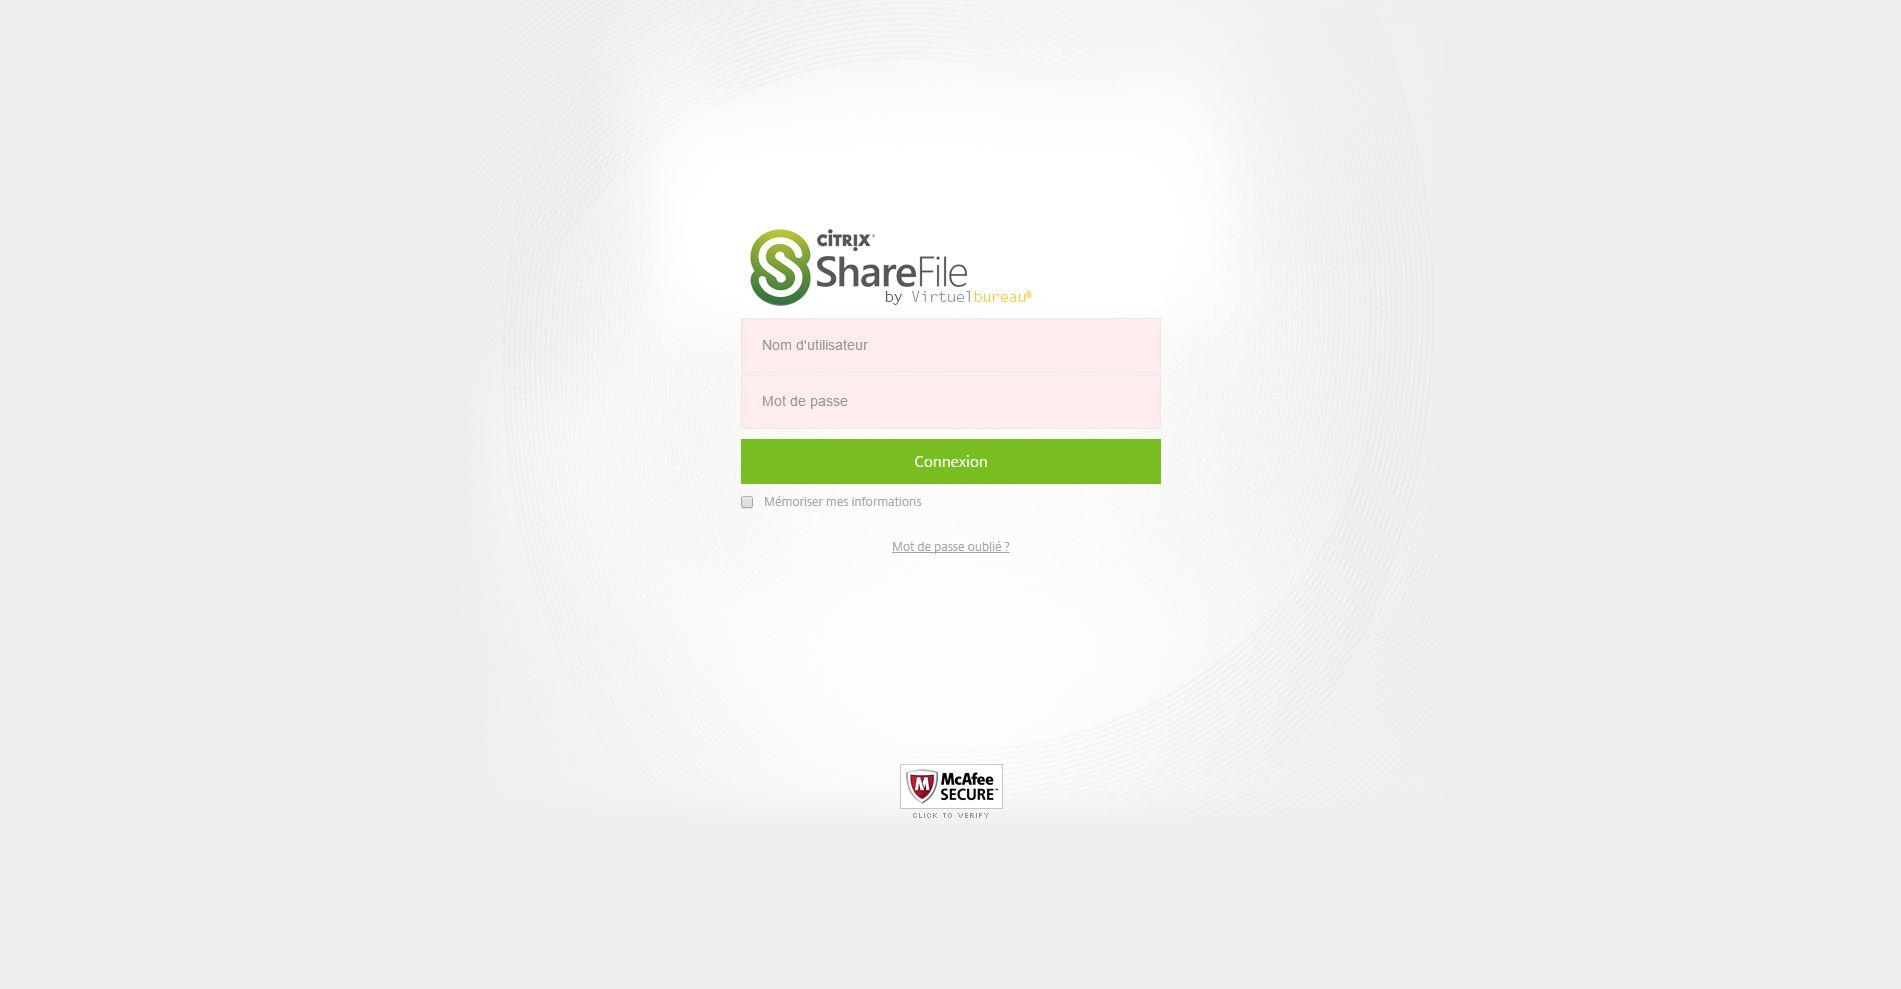 ShareFile by Virtuelbureau - ShareFile by Virtuelbureau: Compatible Window OS, Contrôle strict des accès aux serveurs, Support (téléphone, email, ticket)